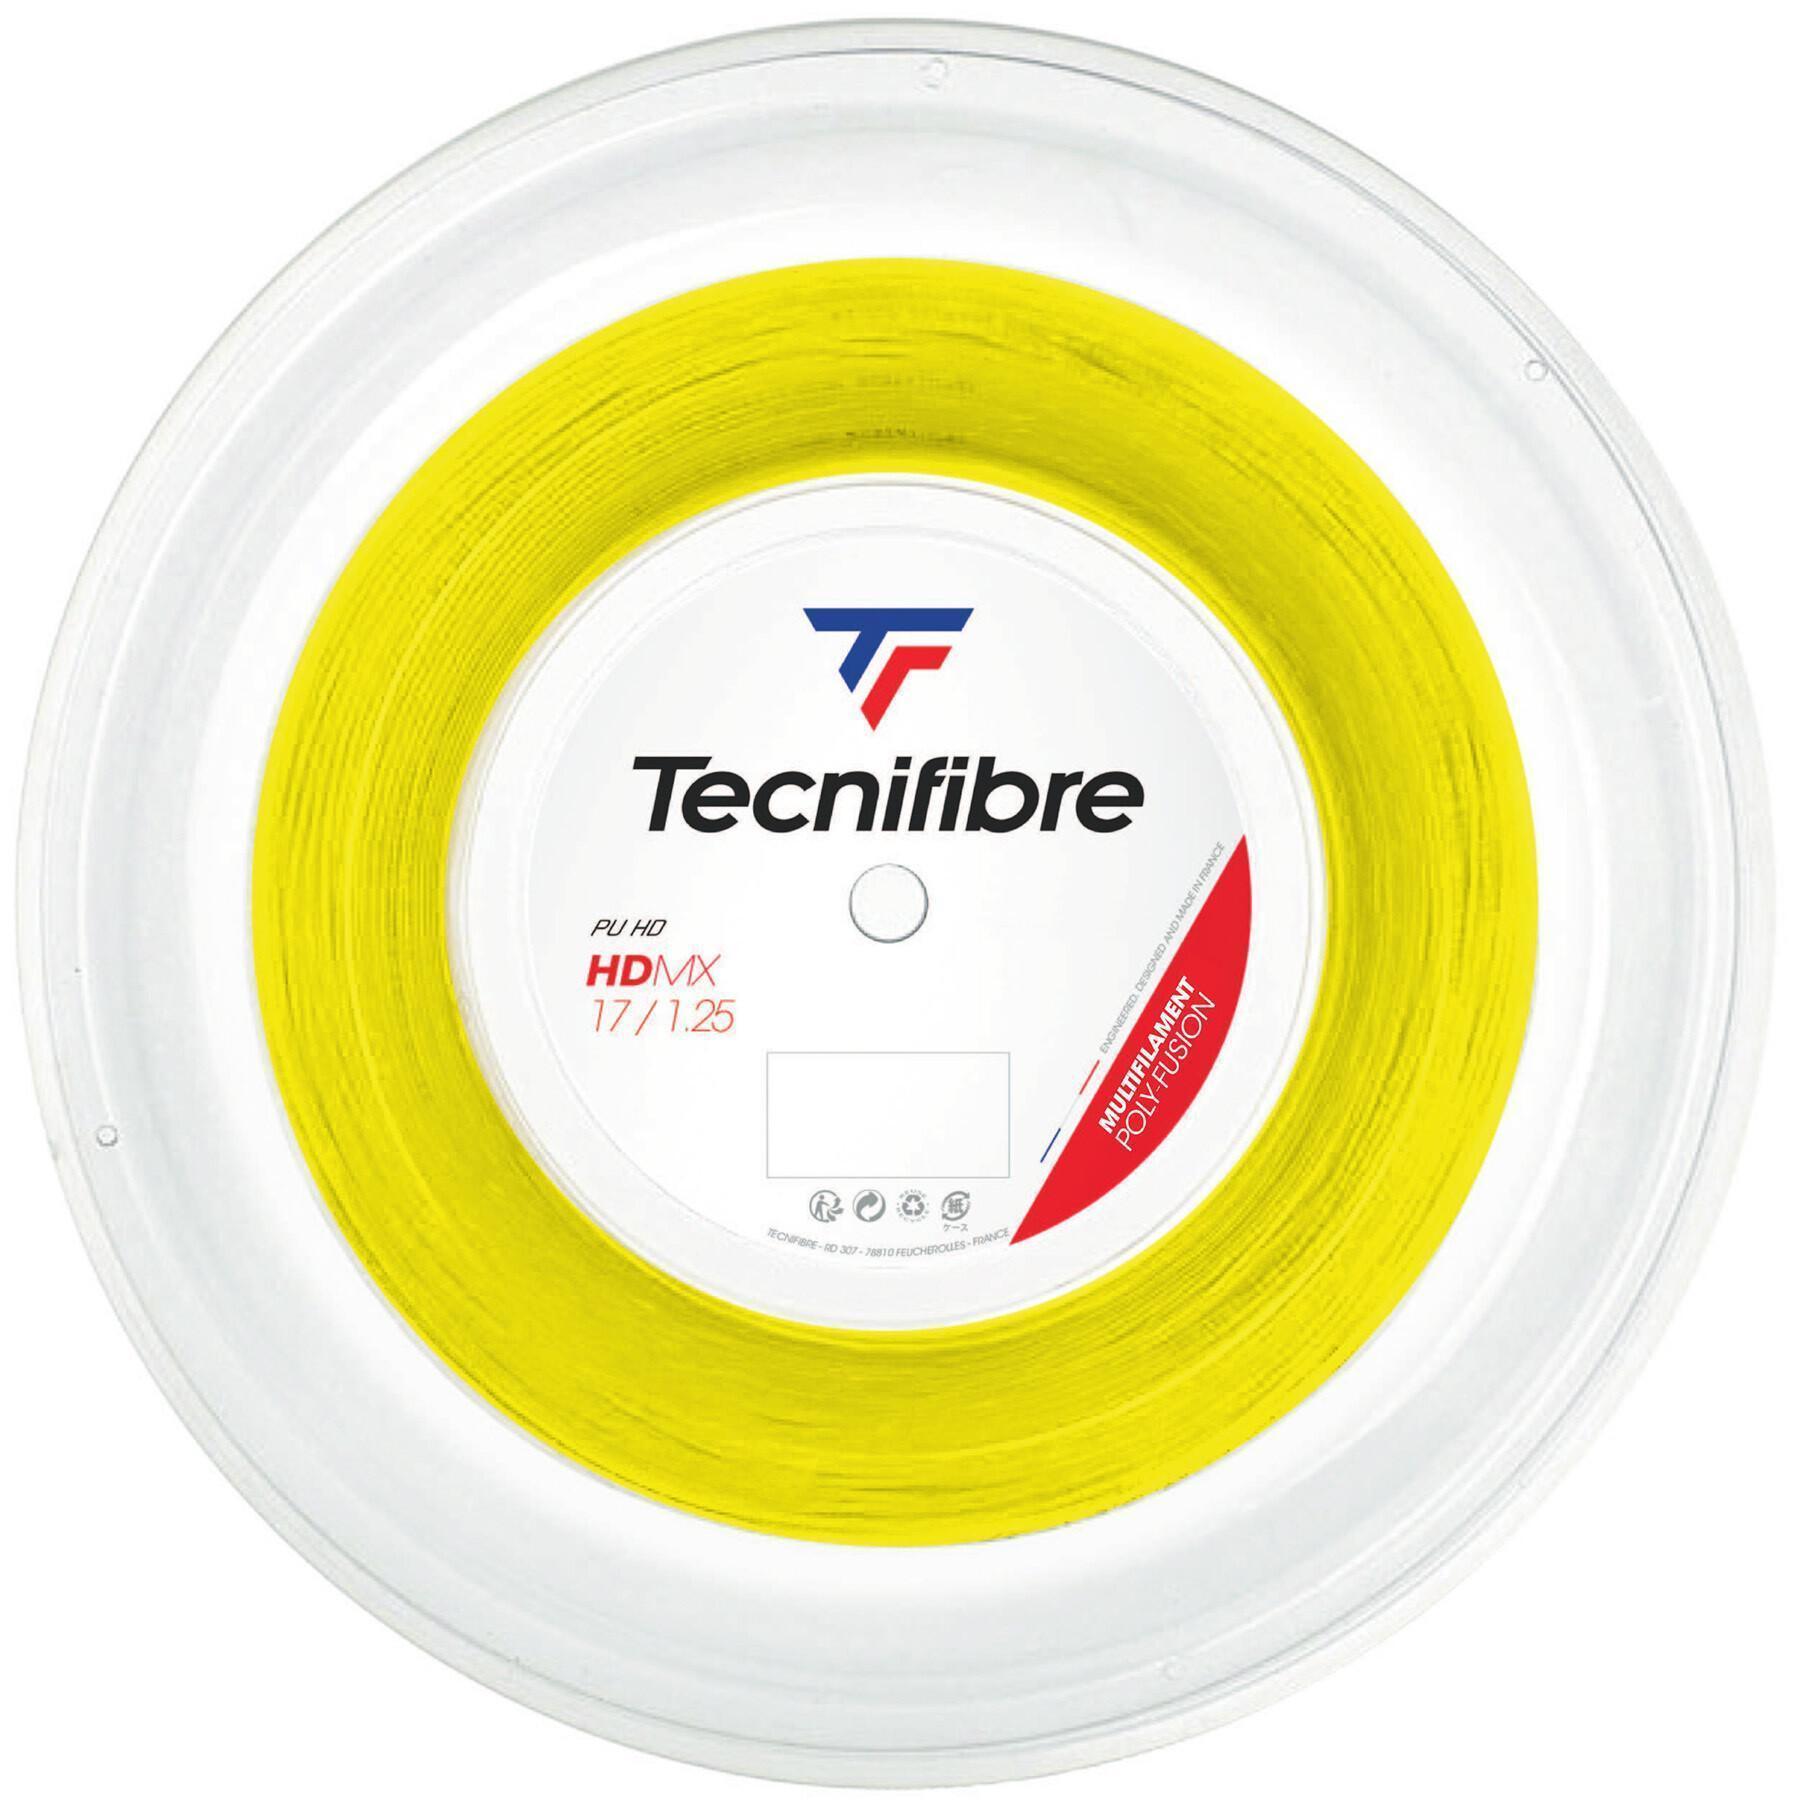 Tennis snaren Tecnifibre HDMX 200 m